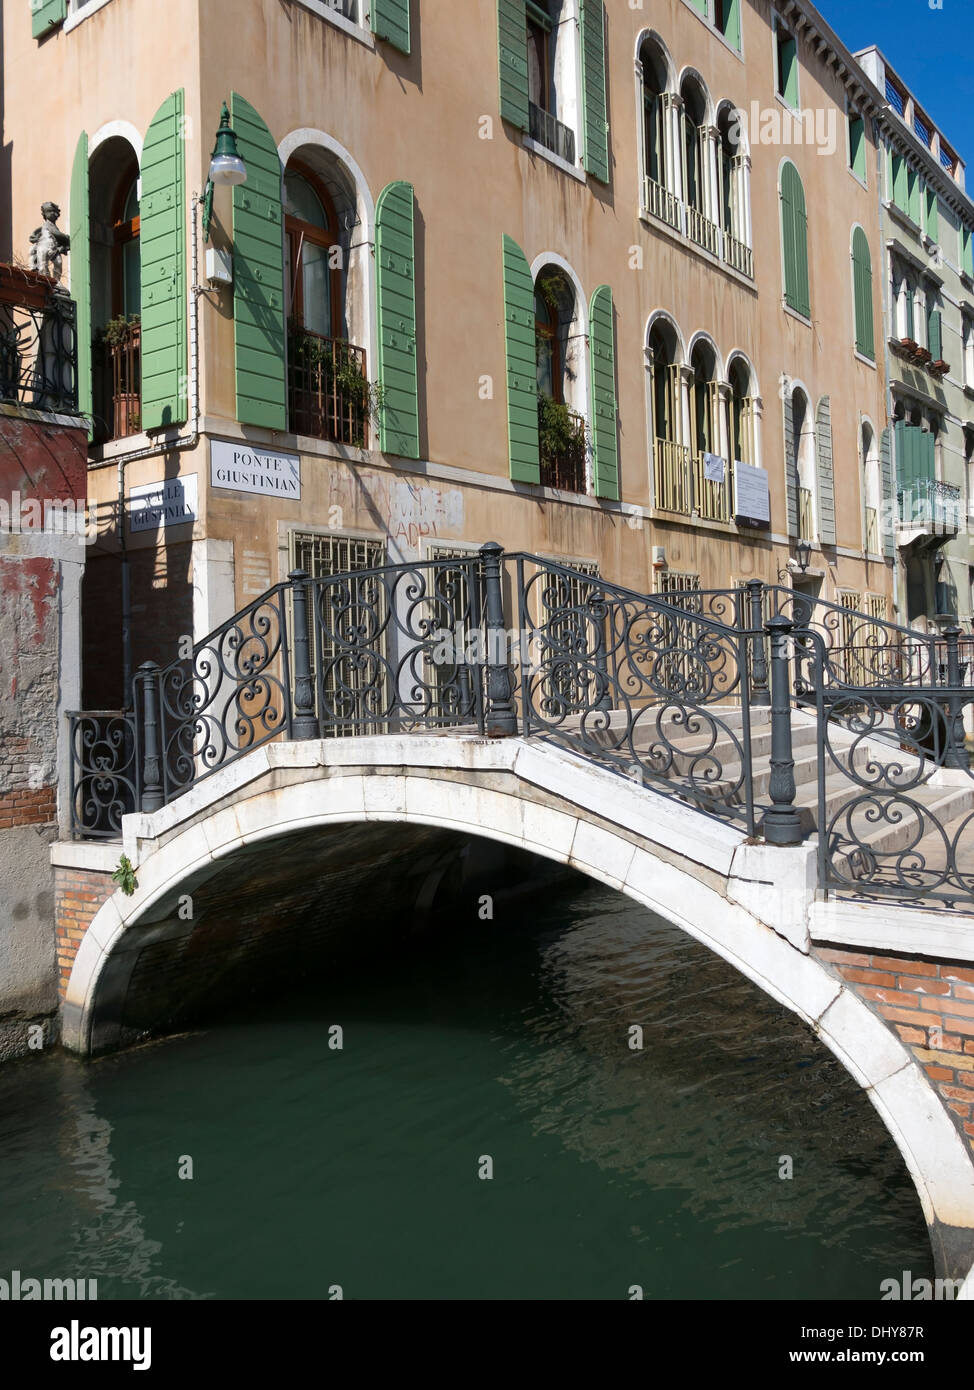 Weiße Stein Bogen Brücke Pont Giustinian mit schmiedeeisernen Geländern über venezianischen Kanal, Venedig, Italien. Stockfoto